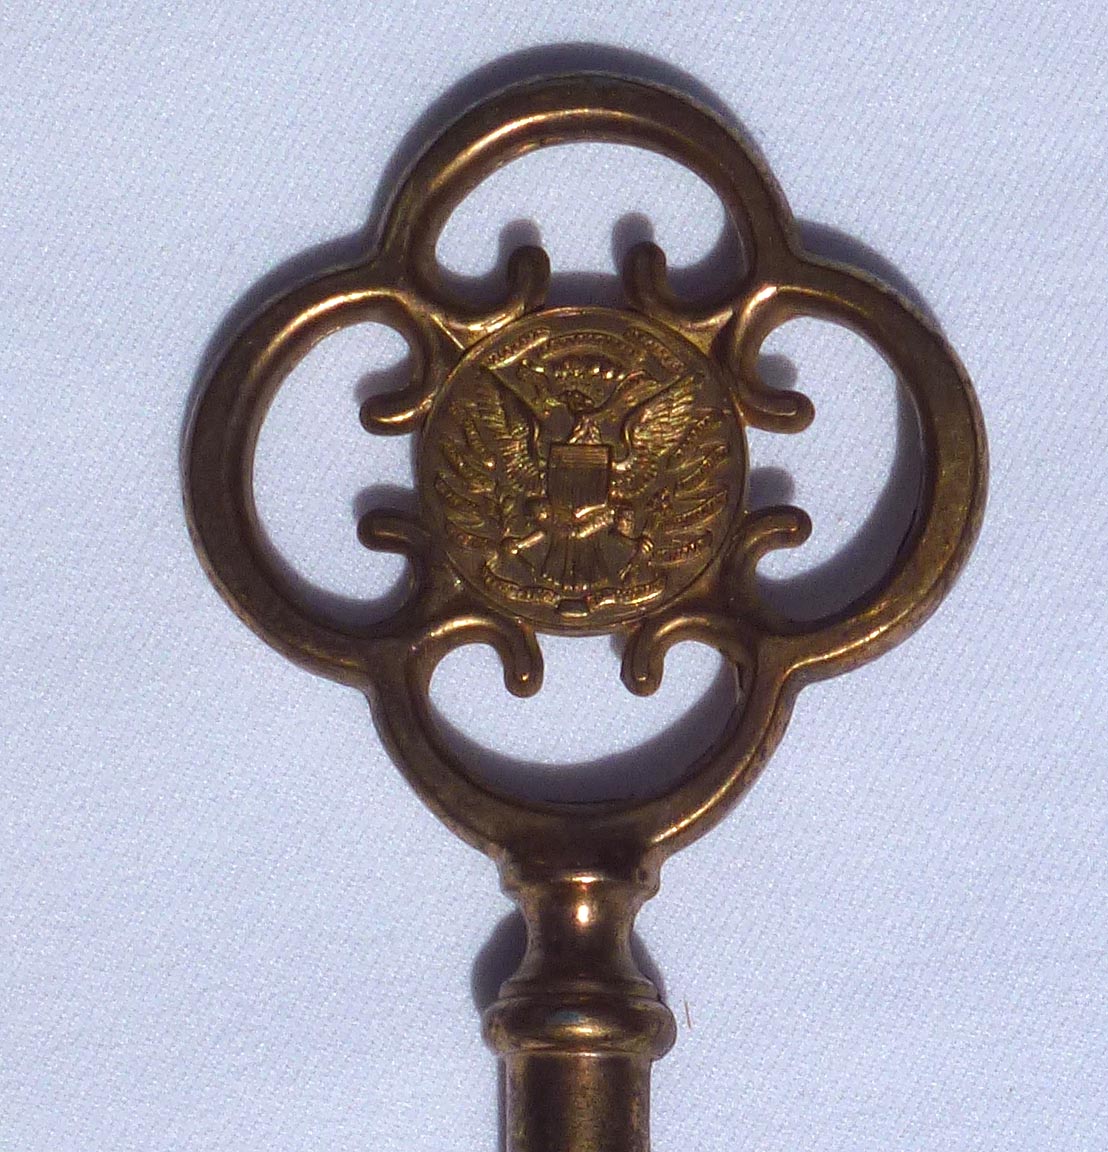 1934 World's Fair souvenir key